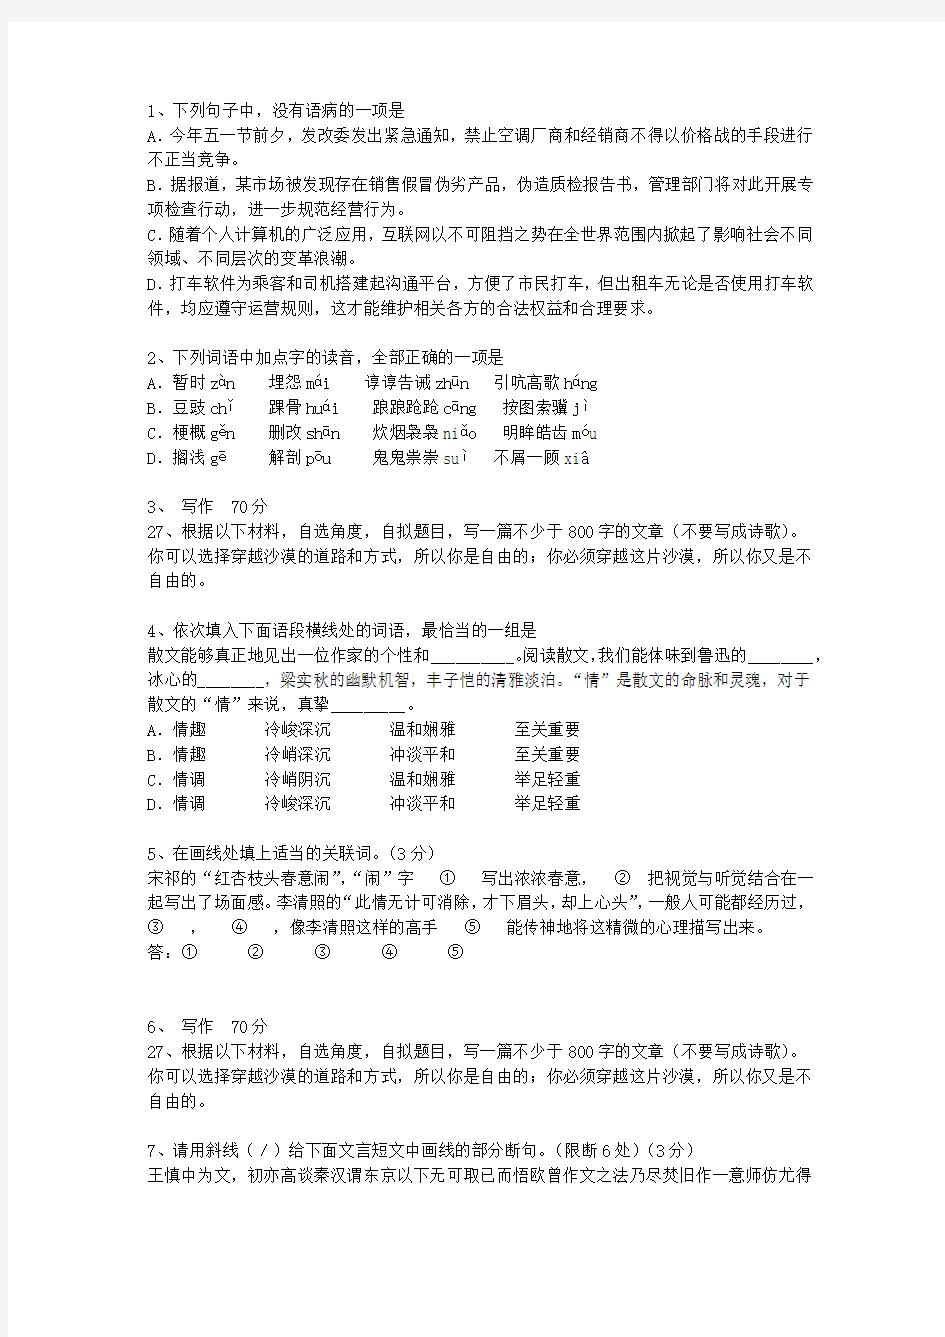 2014海南省高考语文试卷答案、考点详解以及2016预测考试题库